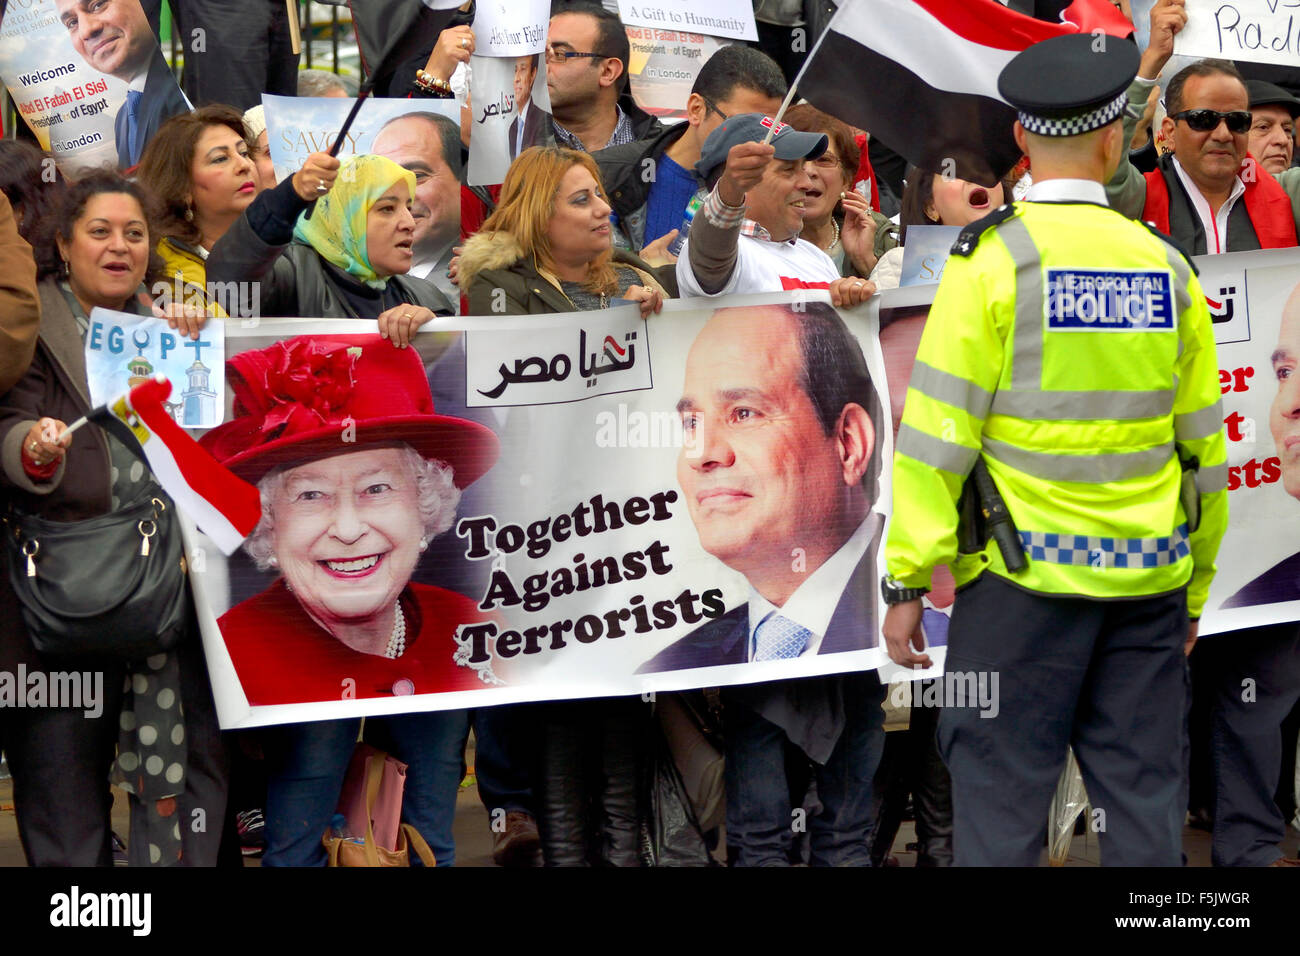 London, UK. 5. November 2015. Für und gegen Präsident Sisi Ägyptens Demonstranten protestieren in Whitehall wartet auf seine Ankunft in der Downing Street treffen der Premierminister - Demonstranten gegen den Präsidenten Credit: PjrNews/Alamy Live News Stockfoto